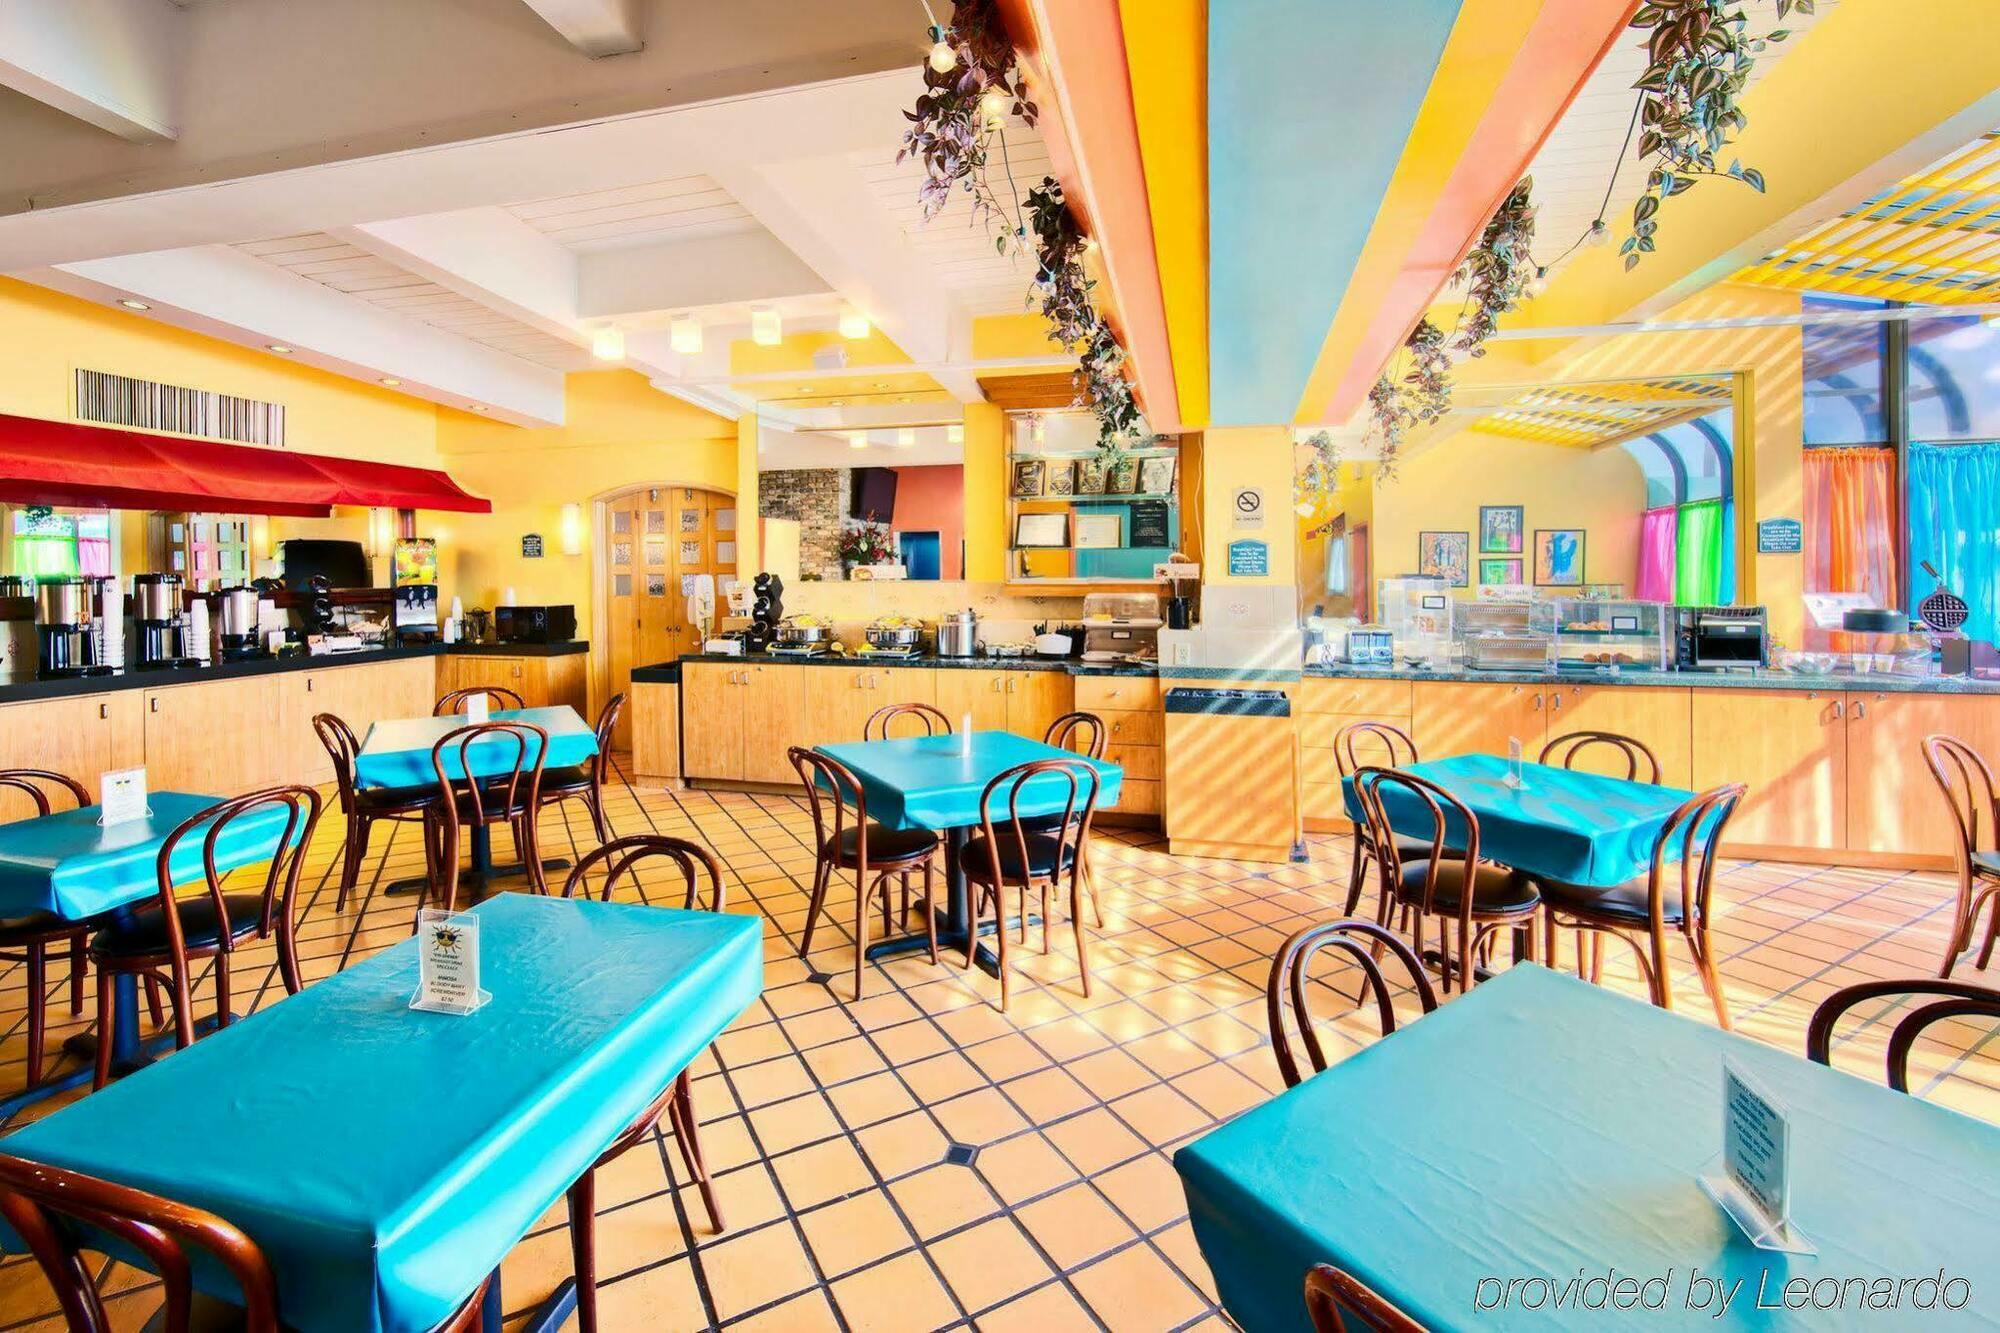 Ramada Oakland Park Inn Fort Lauderdale Restoran gambar